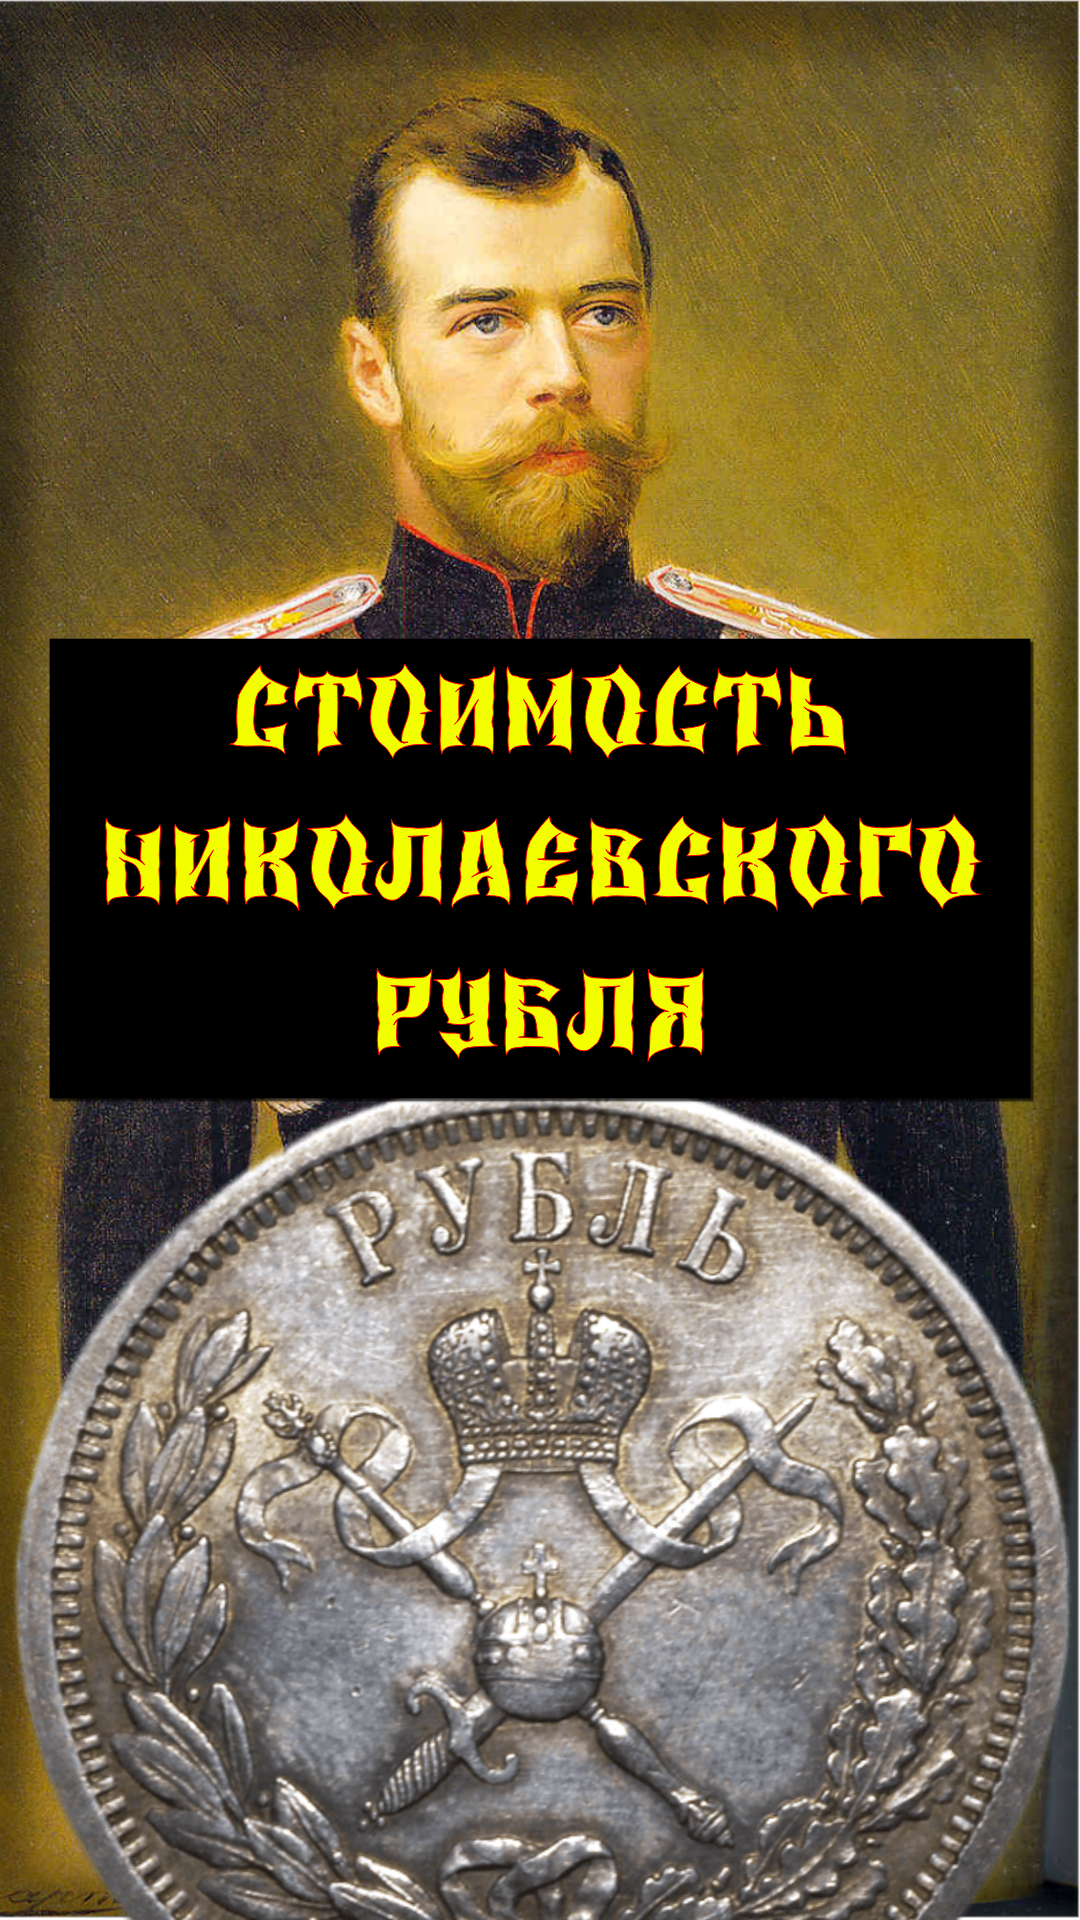 ЦЕНА. 1 рубль 1896 год. В память коронации императора Николая II.